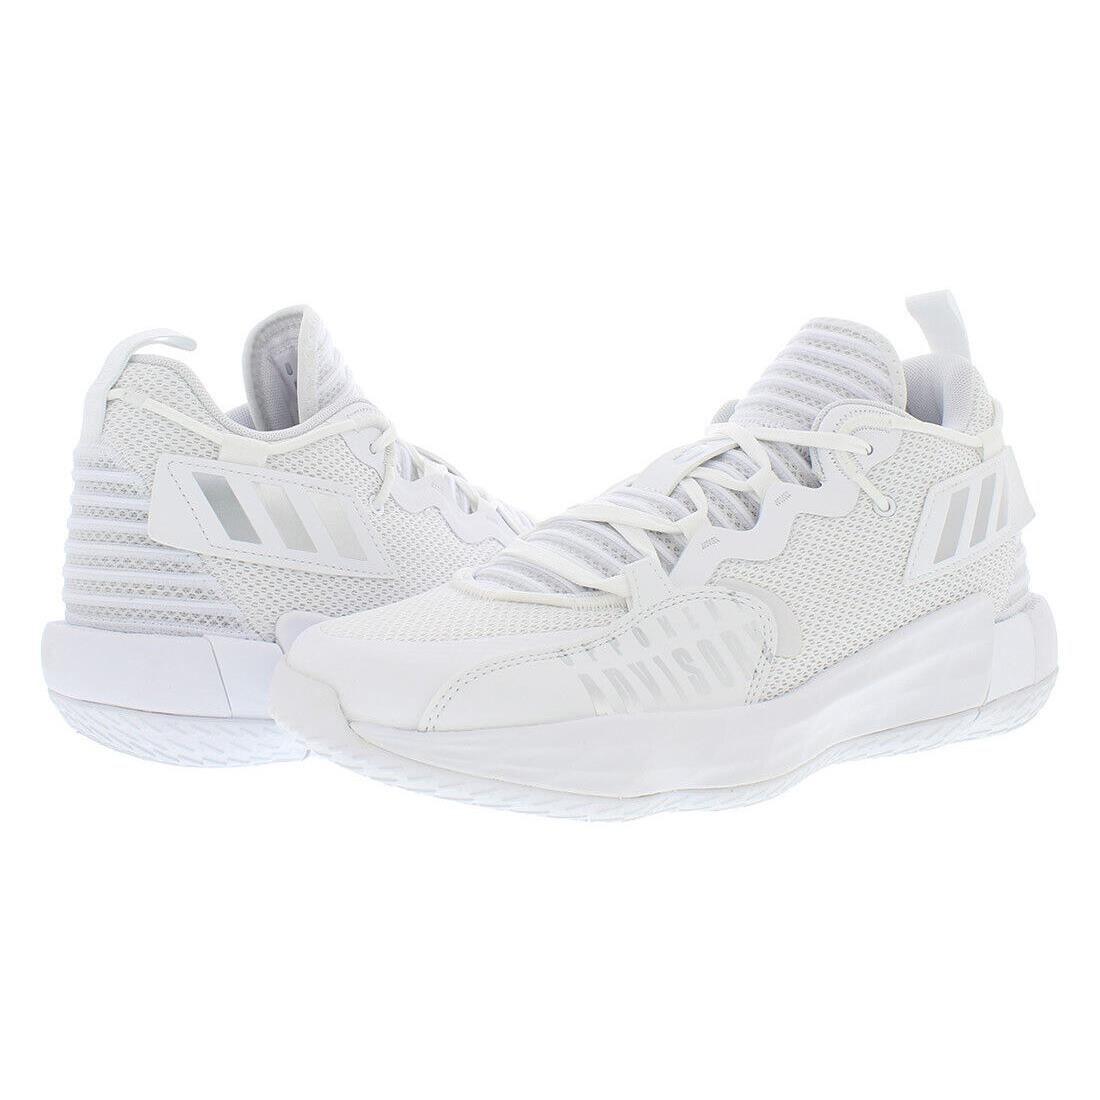 Adidas Sm Dame 7 Extply Unisex Shoes - White, Main: White